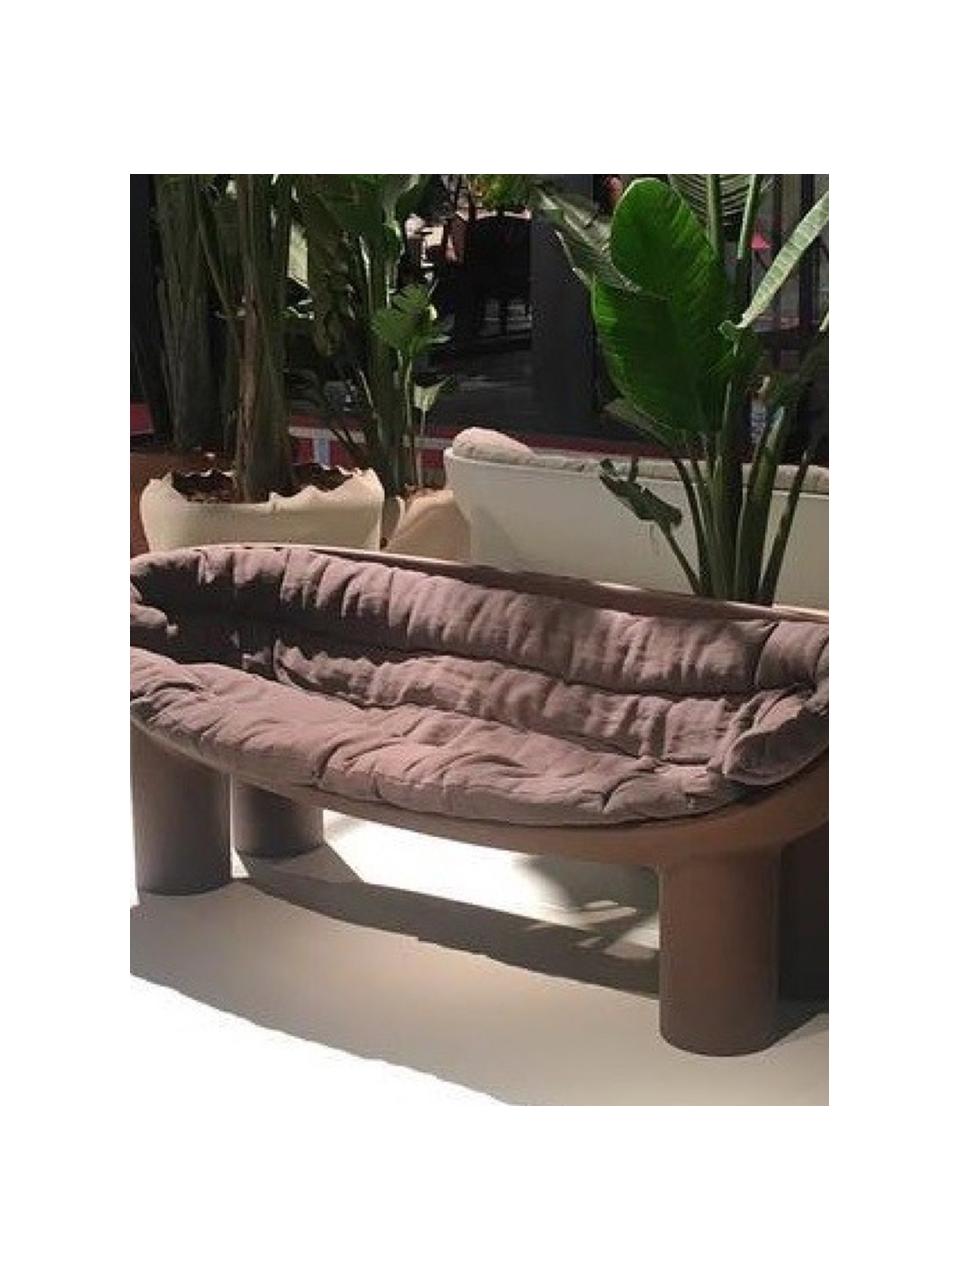 Sofa z tworzywa sztucznego Roly Poly (2-osobowa), Tworzywo sztuczne, Ciemny brązowy, S 175 x W 62 cm